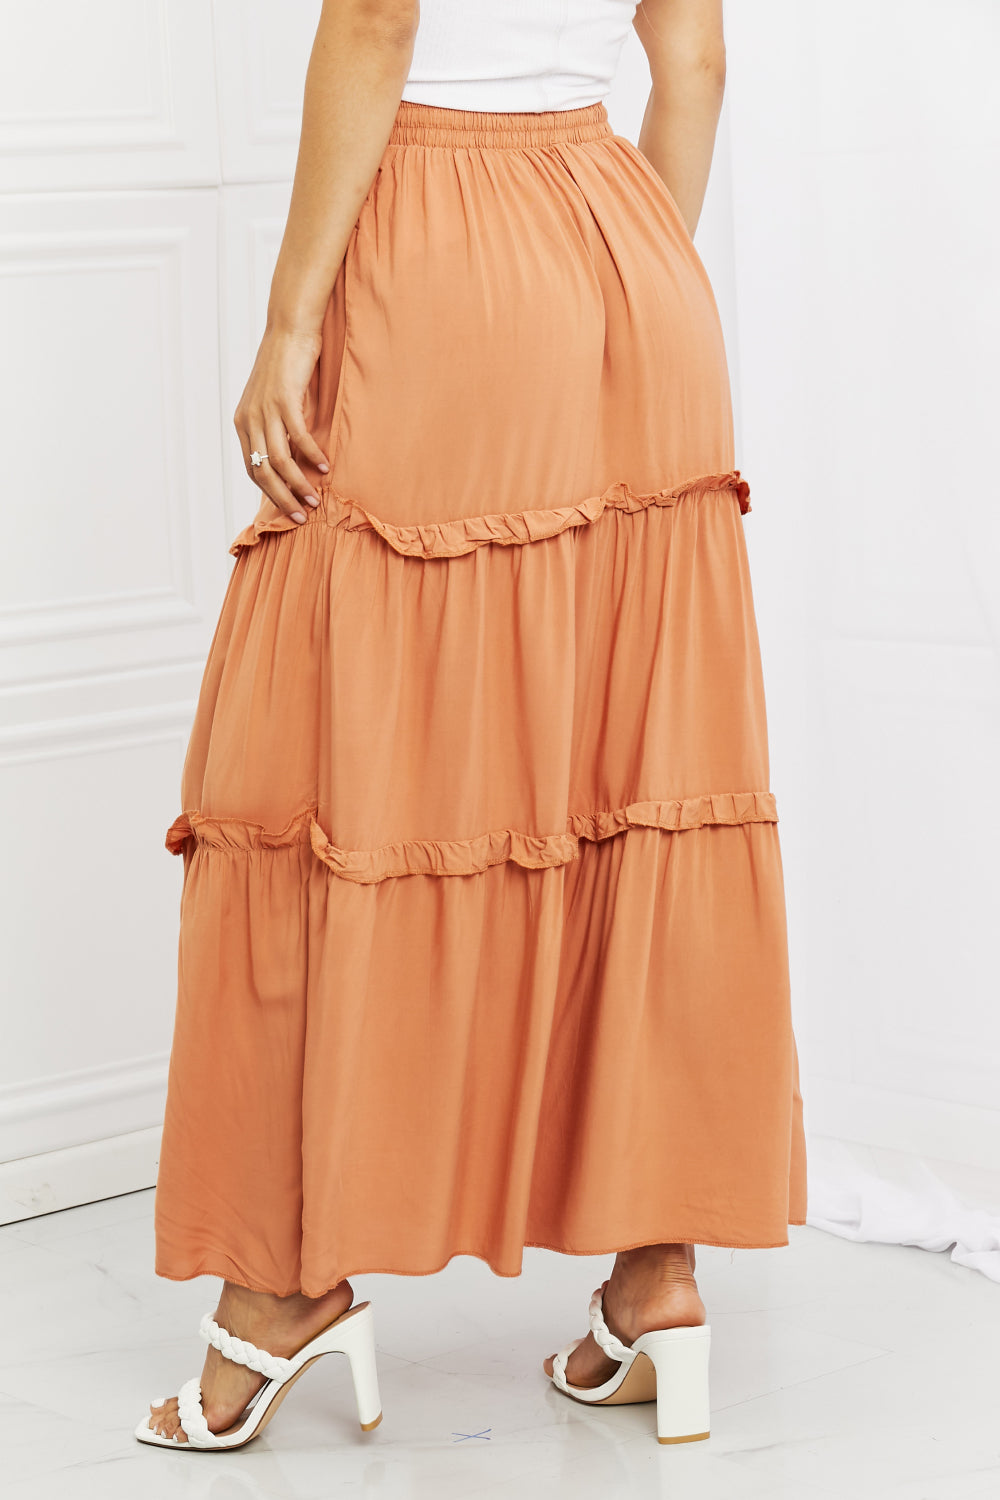 Zenana Summer Days Full Size Ruffled Maxi Skirt in Butter Orange